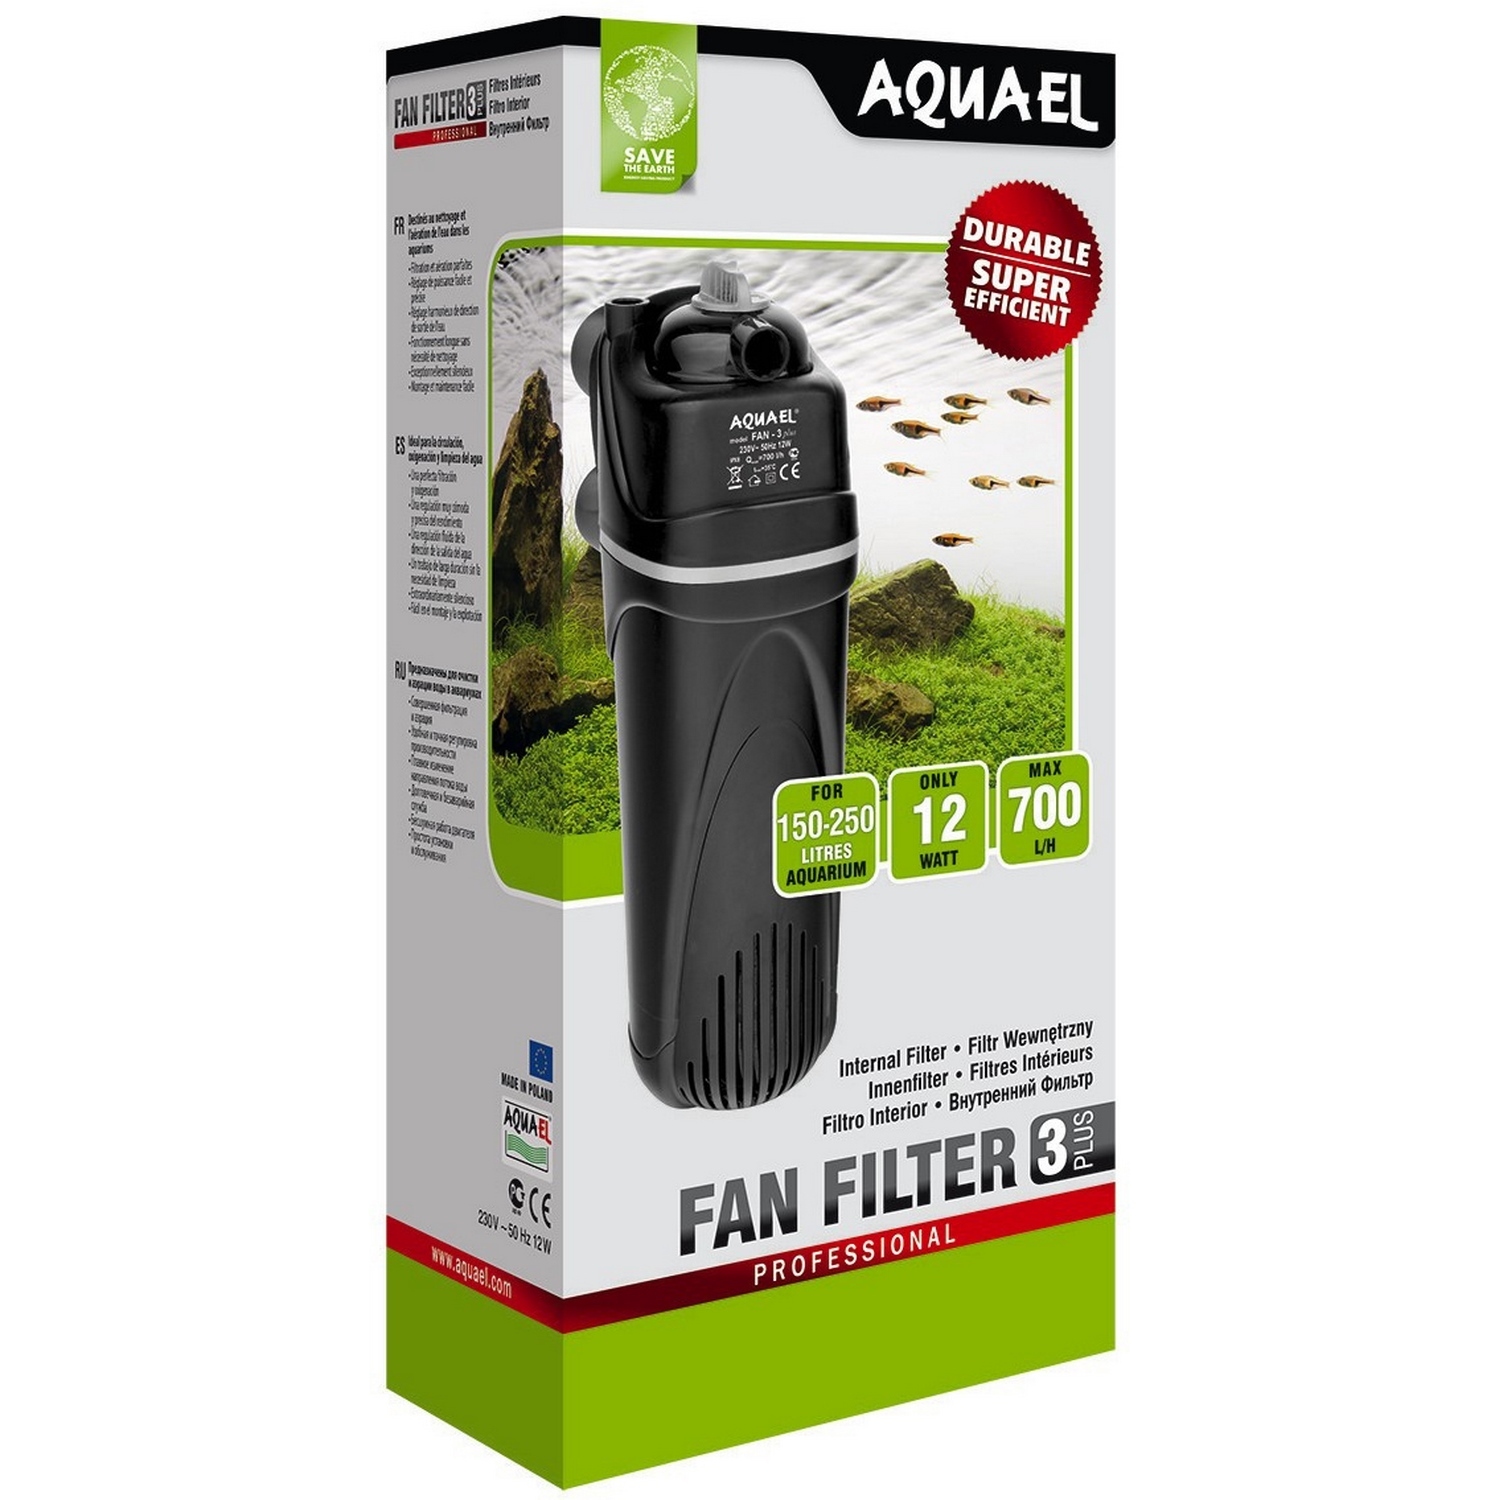 Фильтр для аквариумов AQUAEL Fan Filter 3 plus внутренний 102370 - фото 2